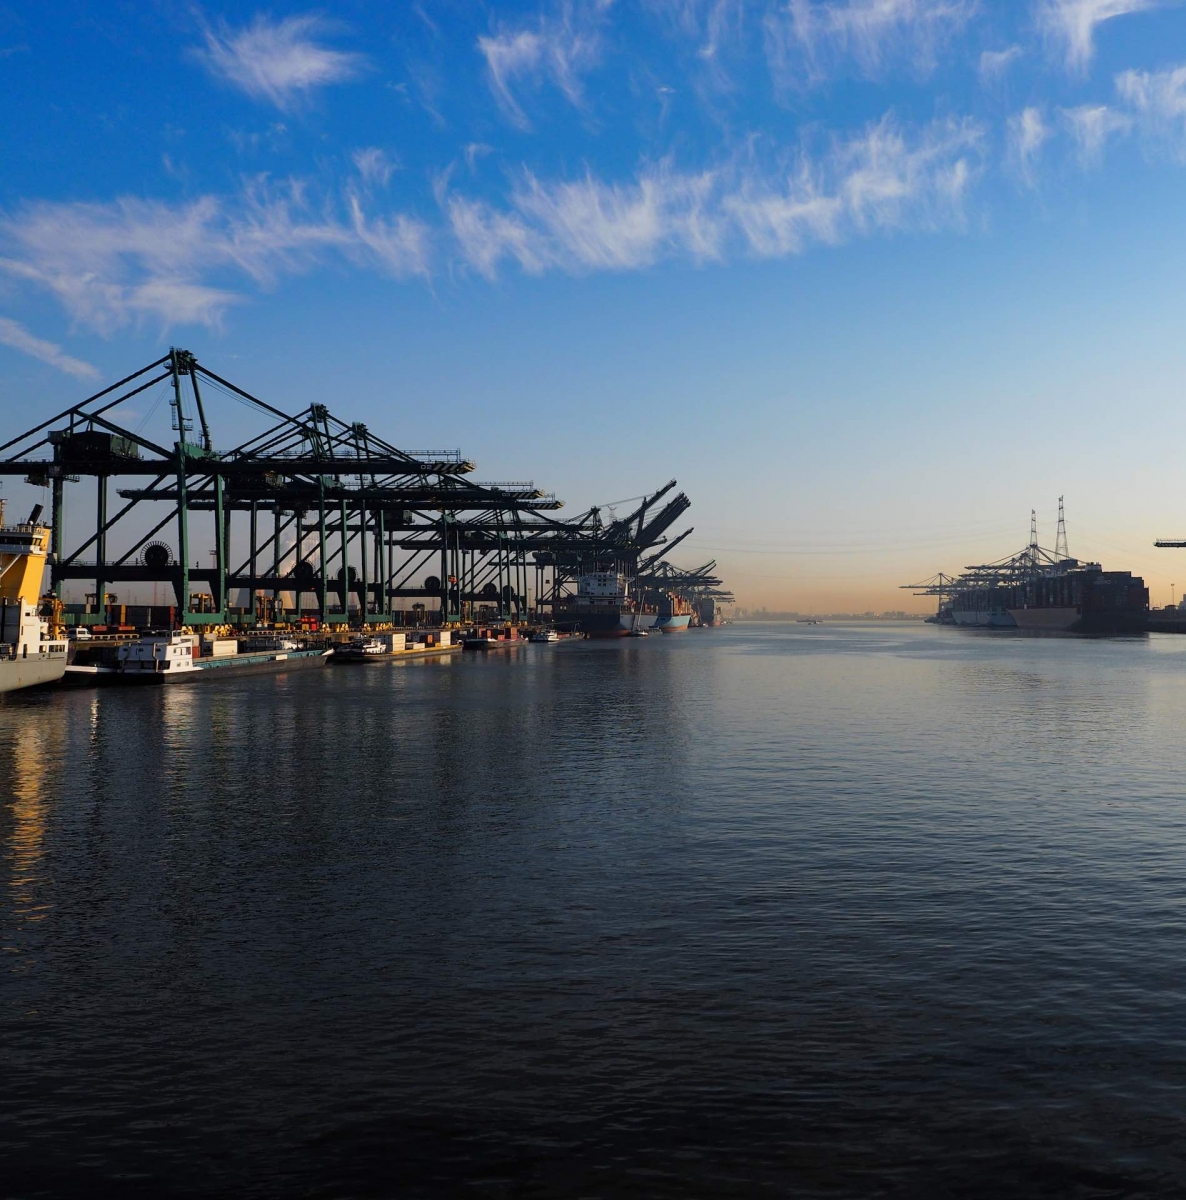 Gru portuali che scaricano container dalle navi in ​​una mattinata di sole nel porto di Anversa.